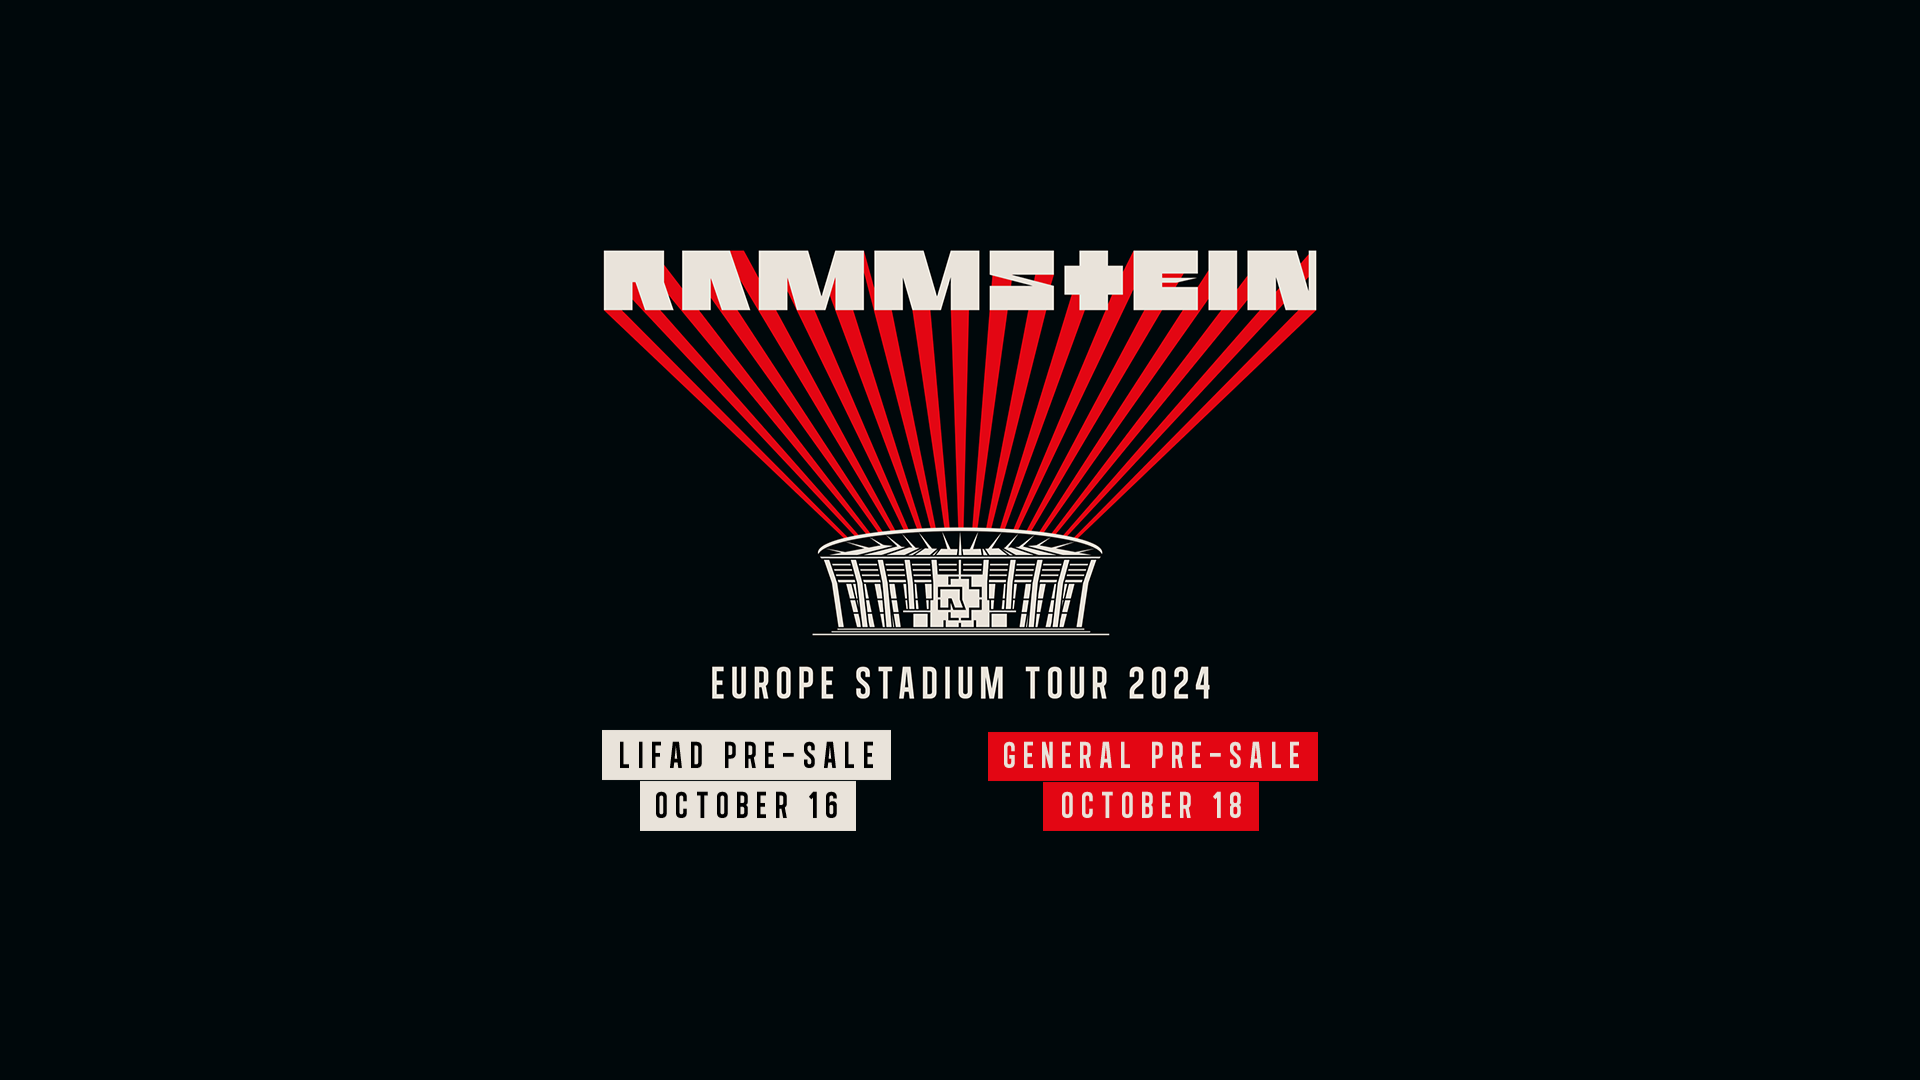 Itt lesznek 2024ben a Rammstein koncertek RockStation